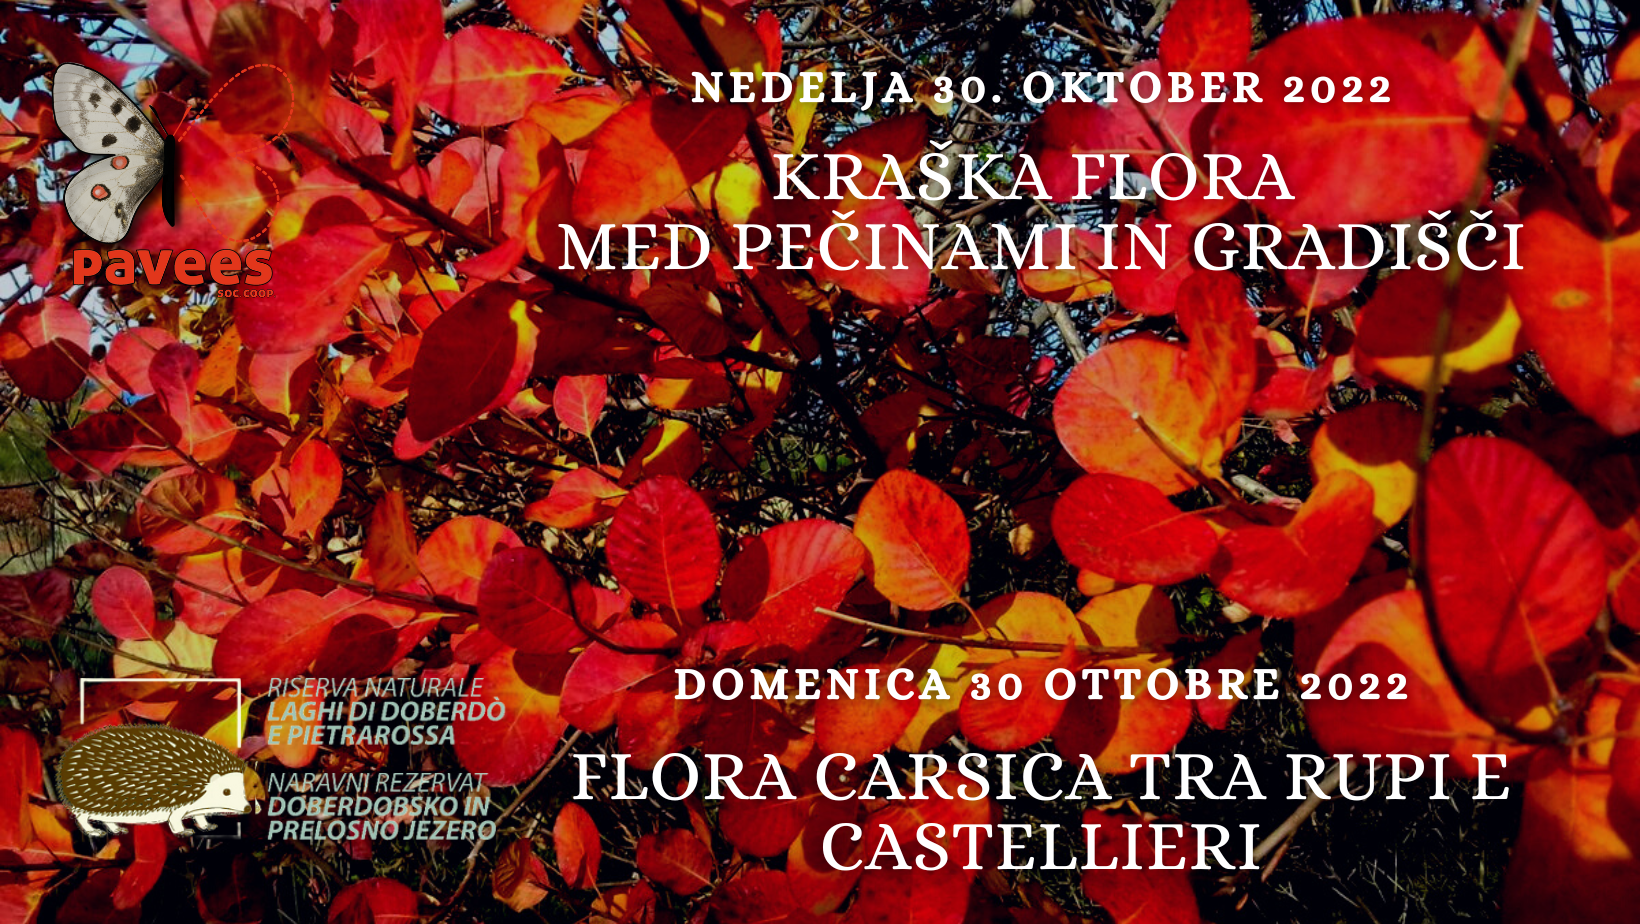 Domenica 30 ottobre - Flora carsica tra rupi e castellieri 